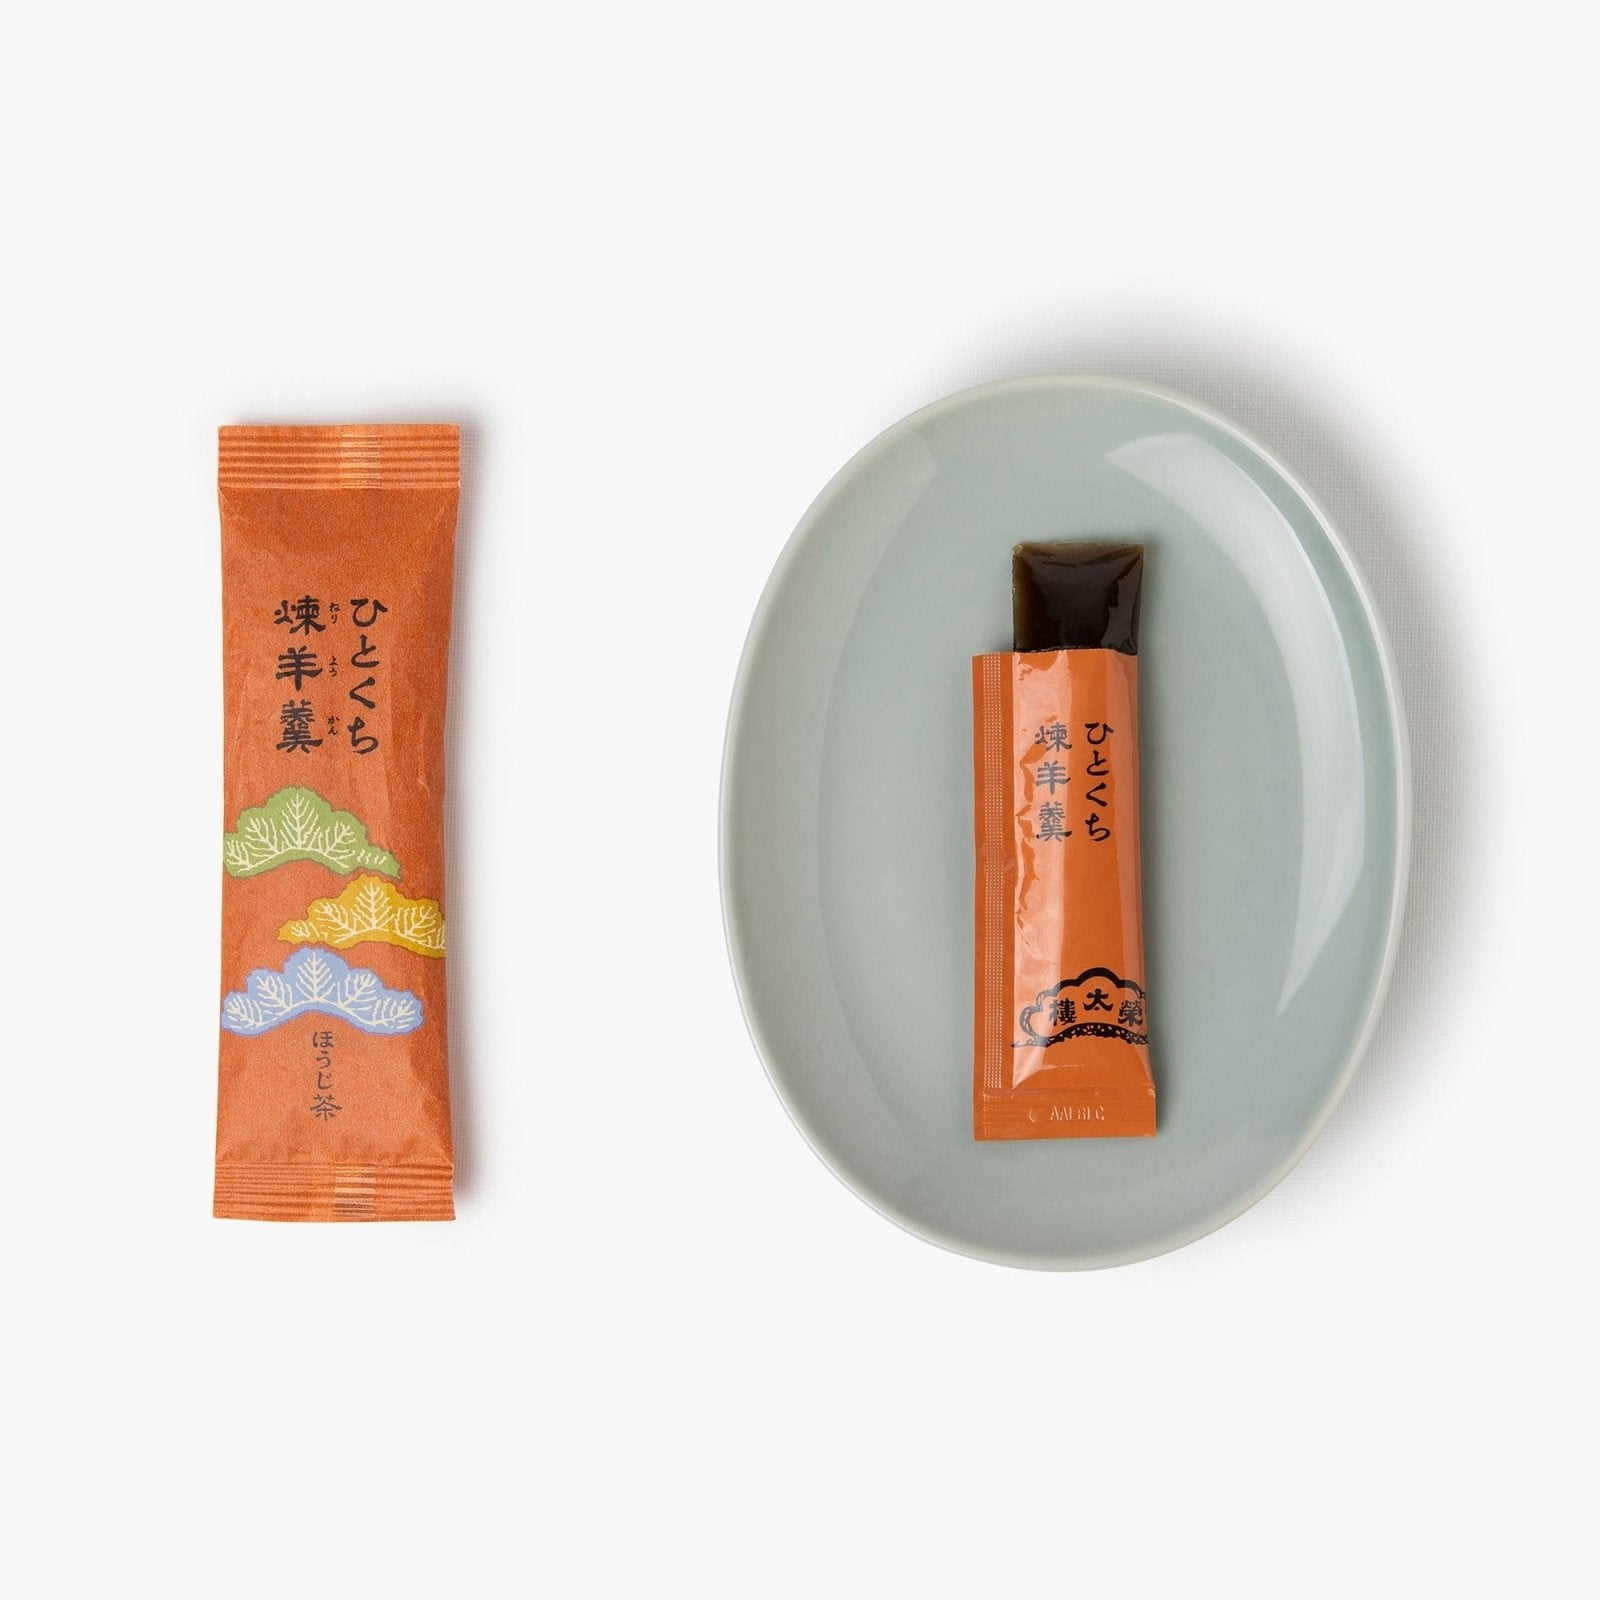 Gelée de haricots rouges au thé vert torréfié - 27g - Eitaro Confectionary - iRASSHAi